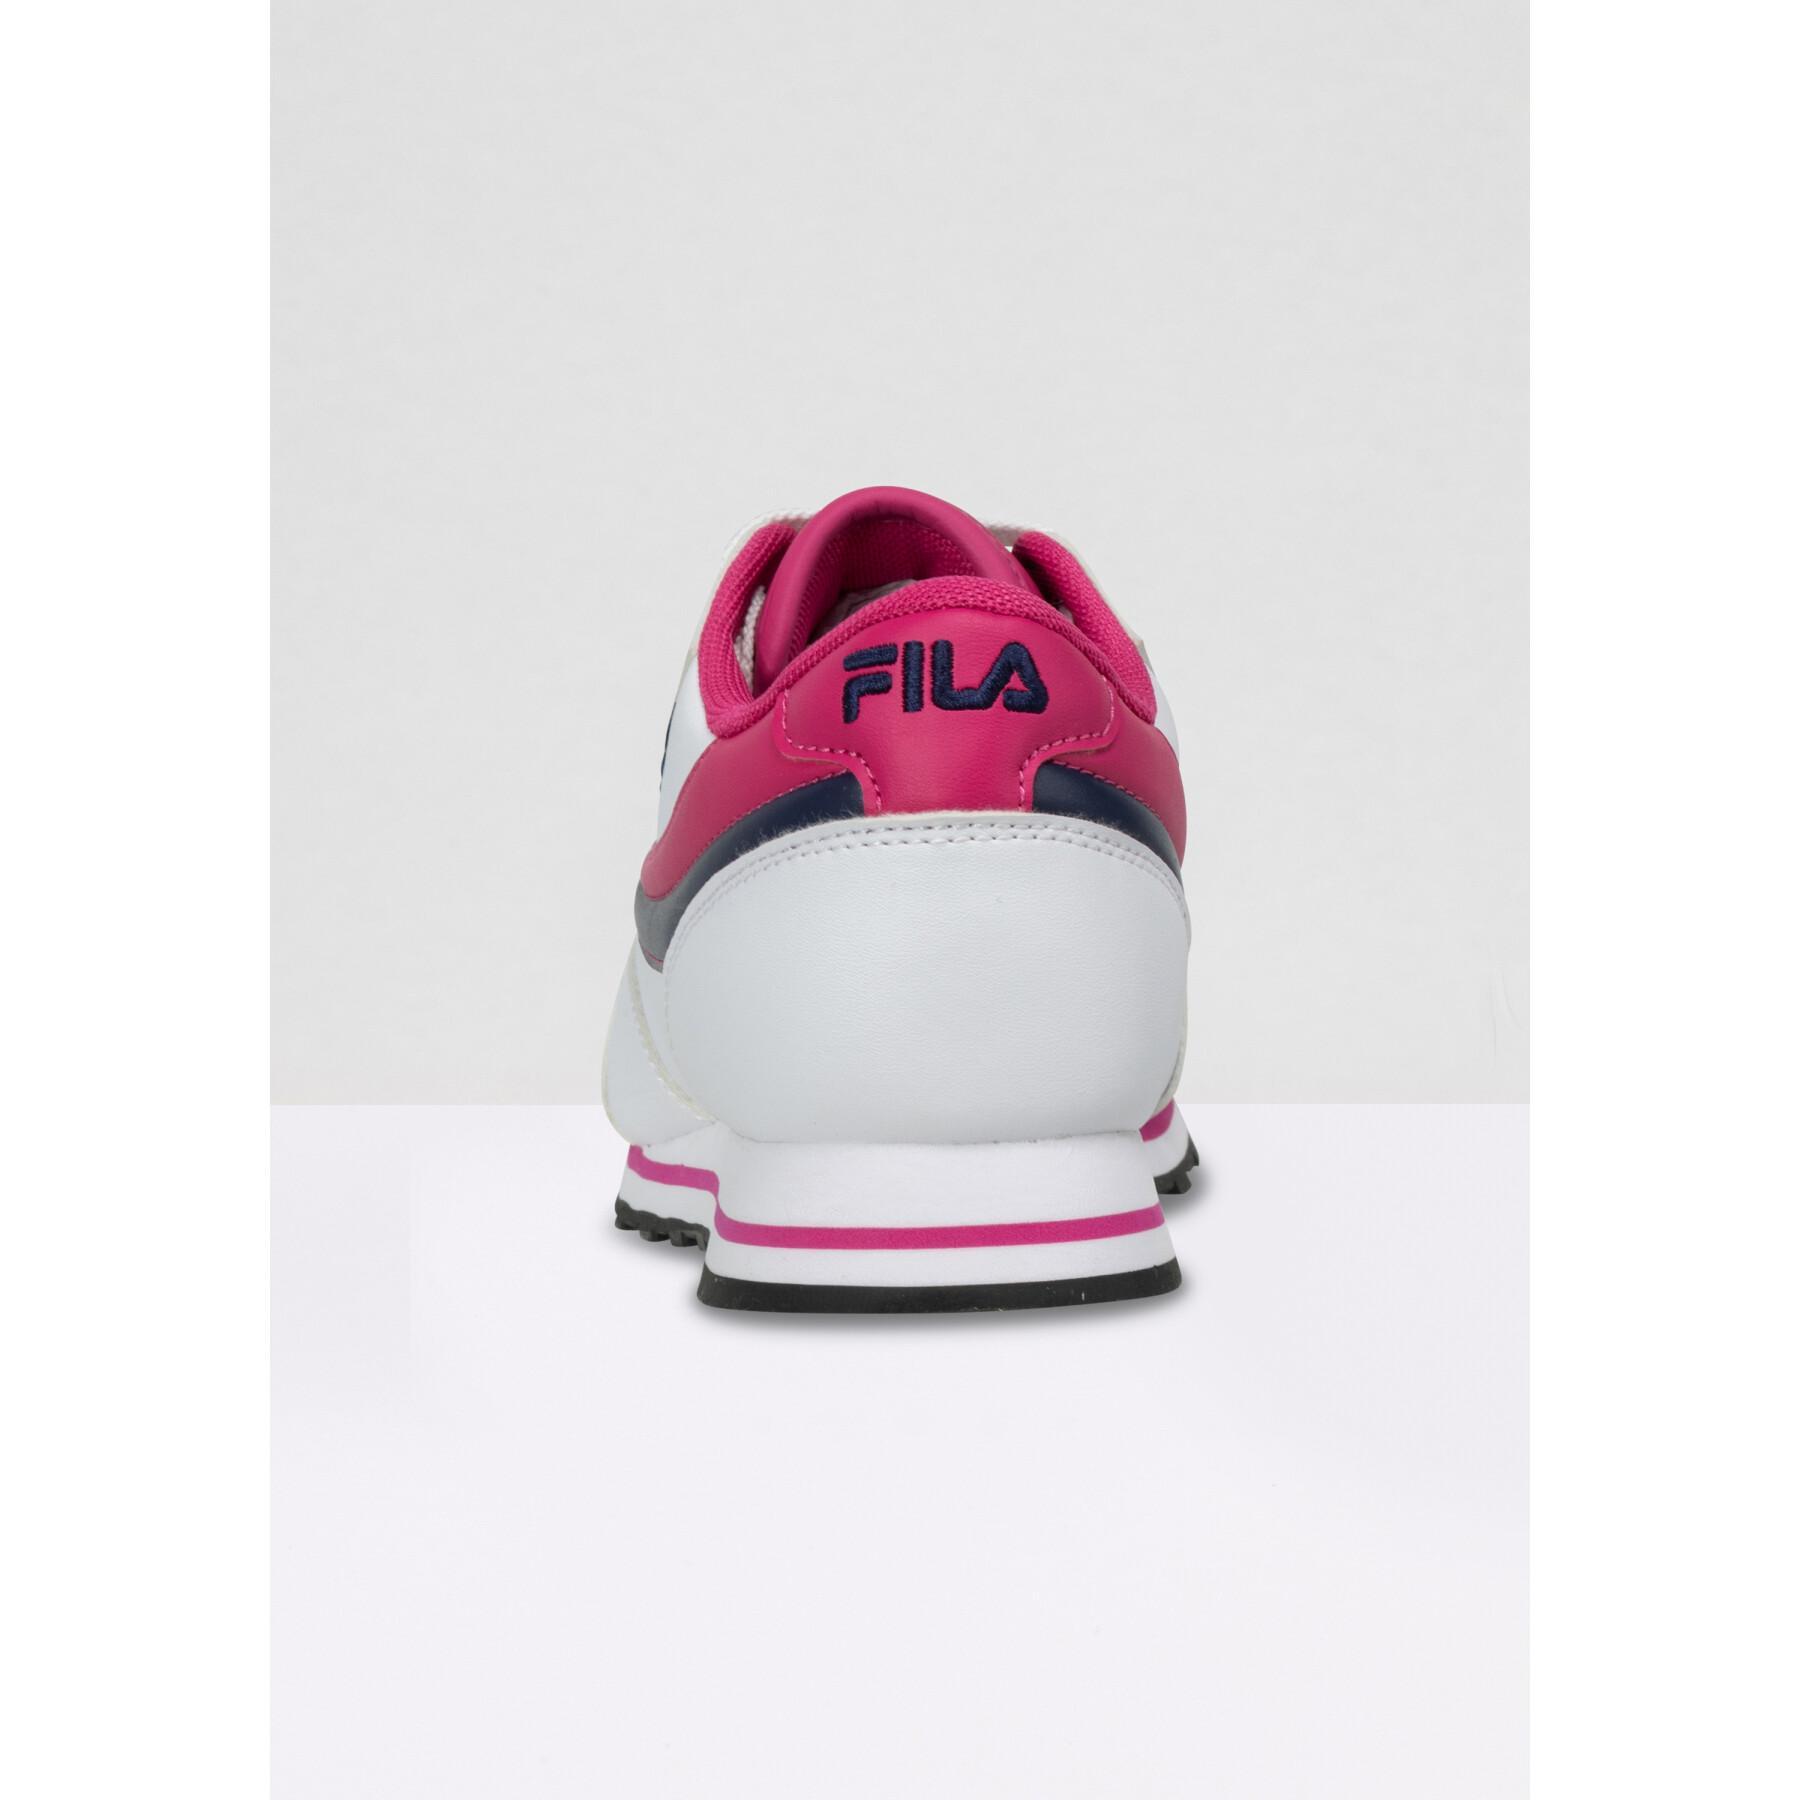 Children's sneakers Fila Orbit